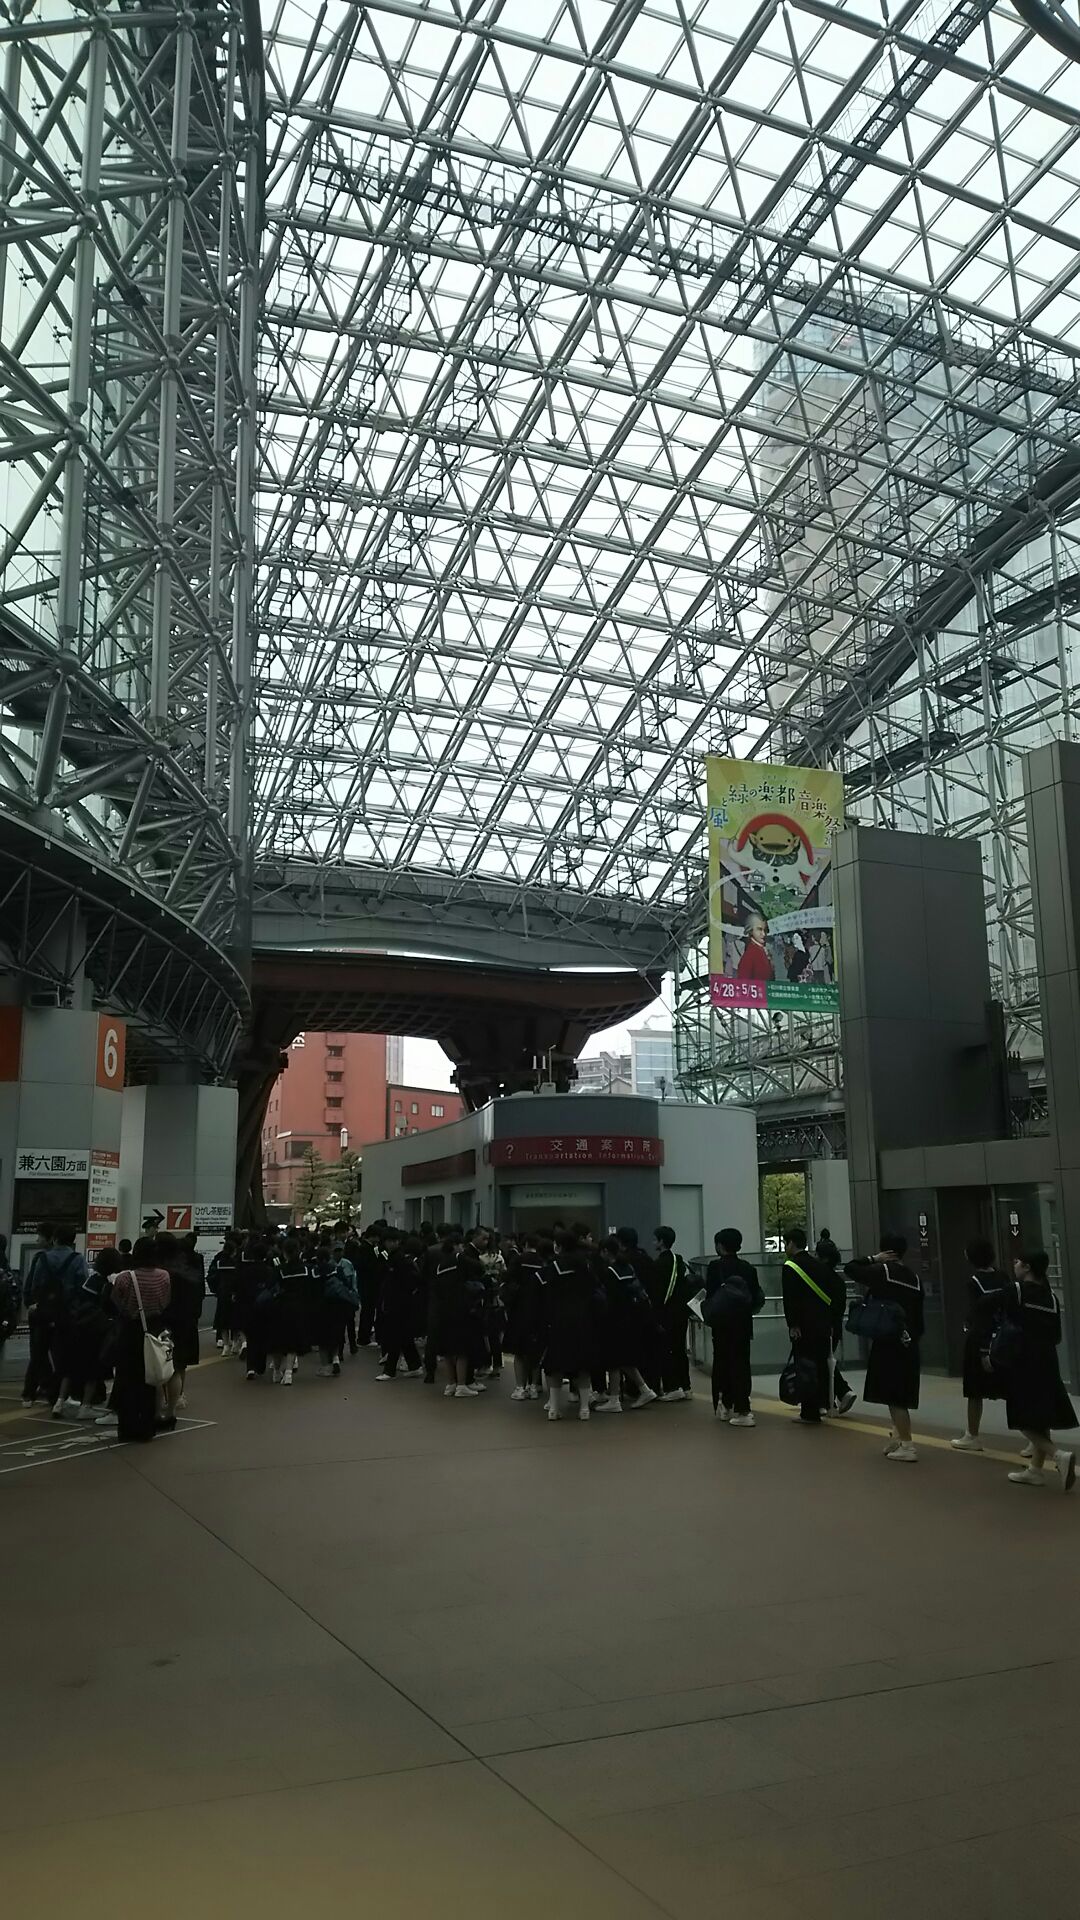 修学旅行生がたくさんいる金沢駅の写真